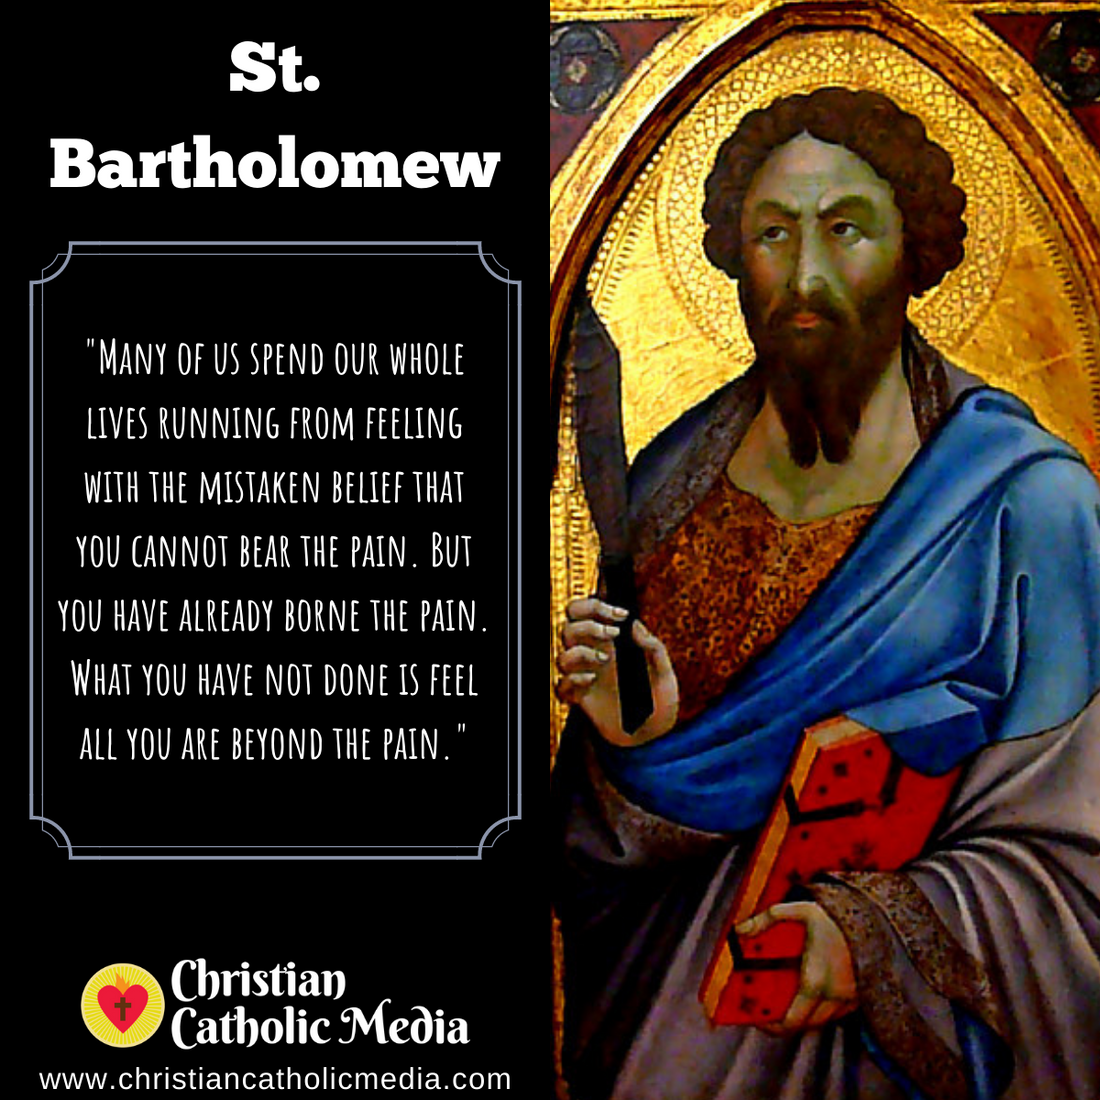 St. Bartholomew - Monday August 24, 2020